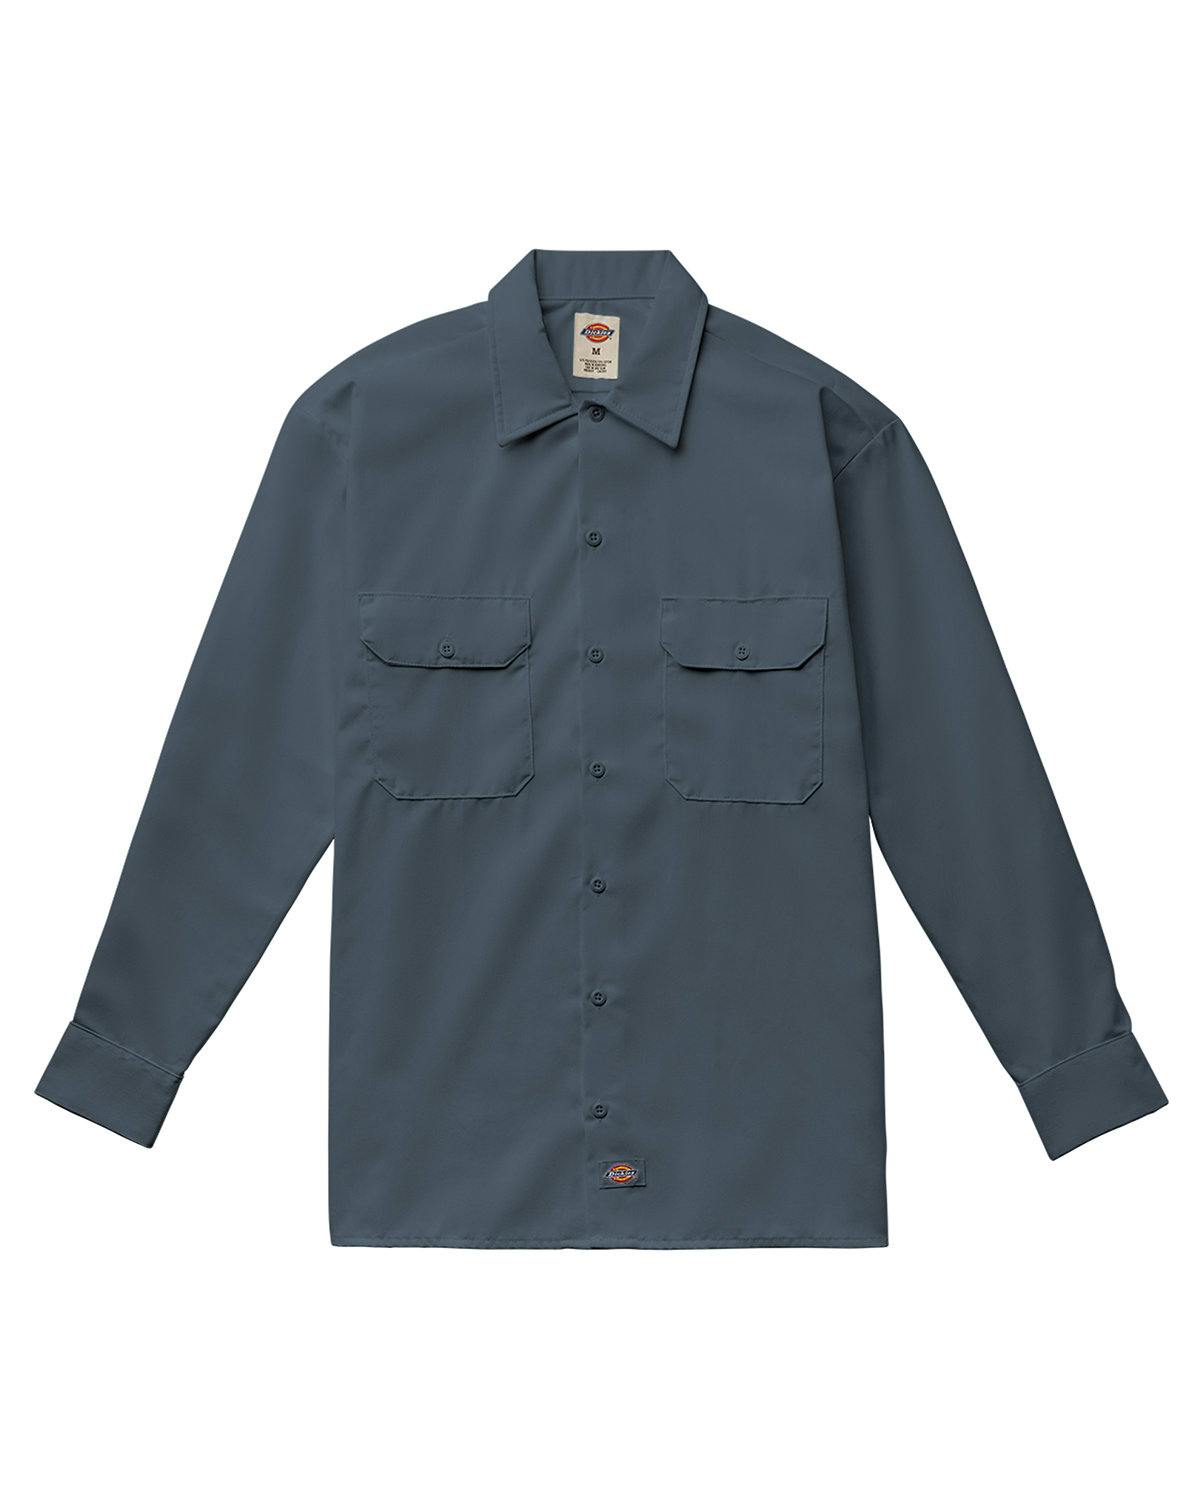 Image for Unisex Long-Sleeve Work Shirt